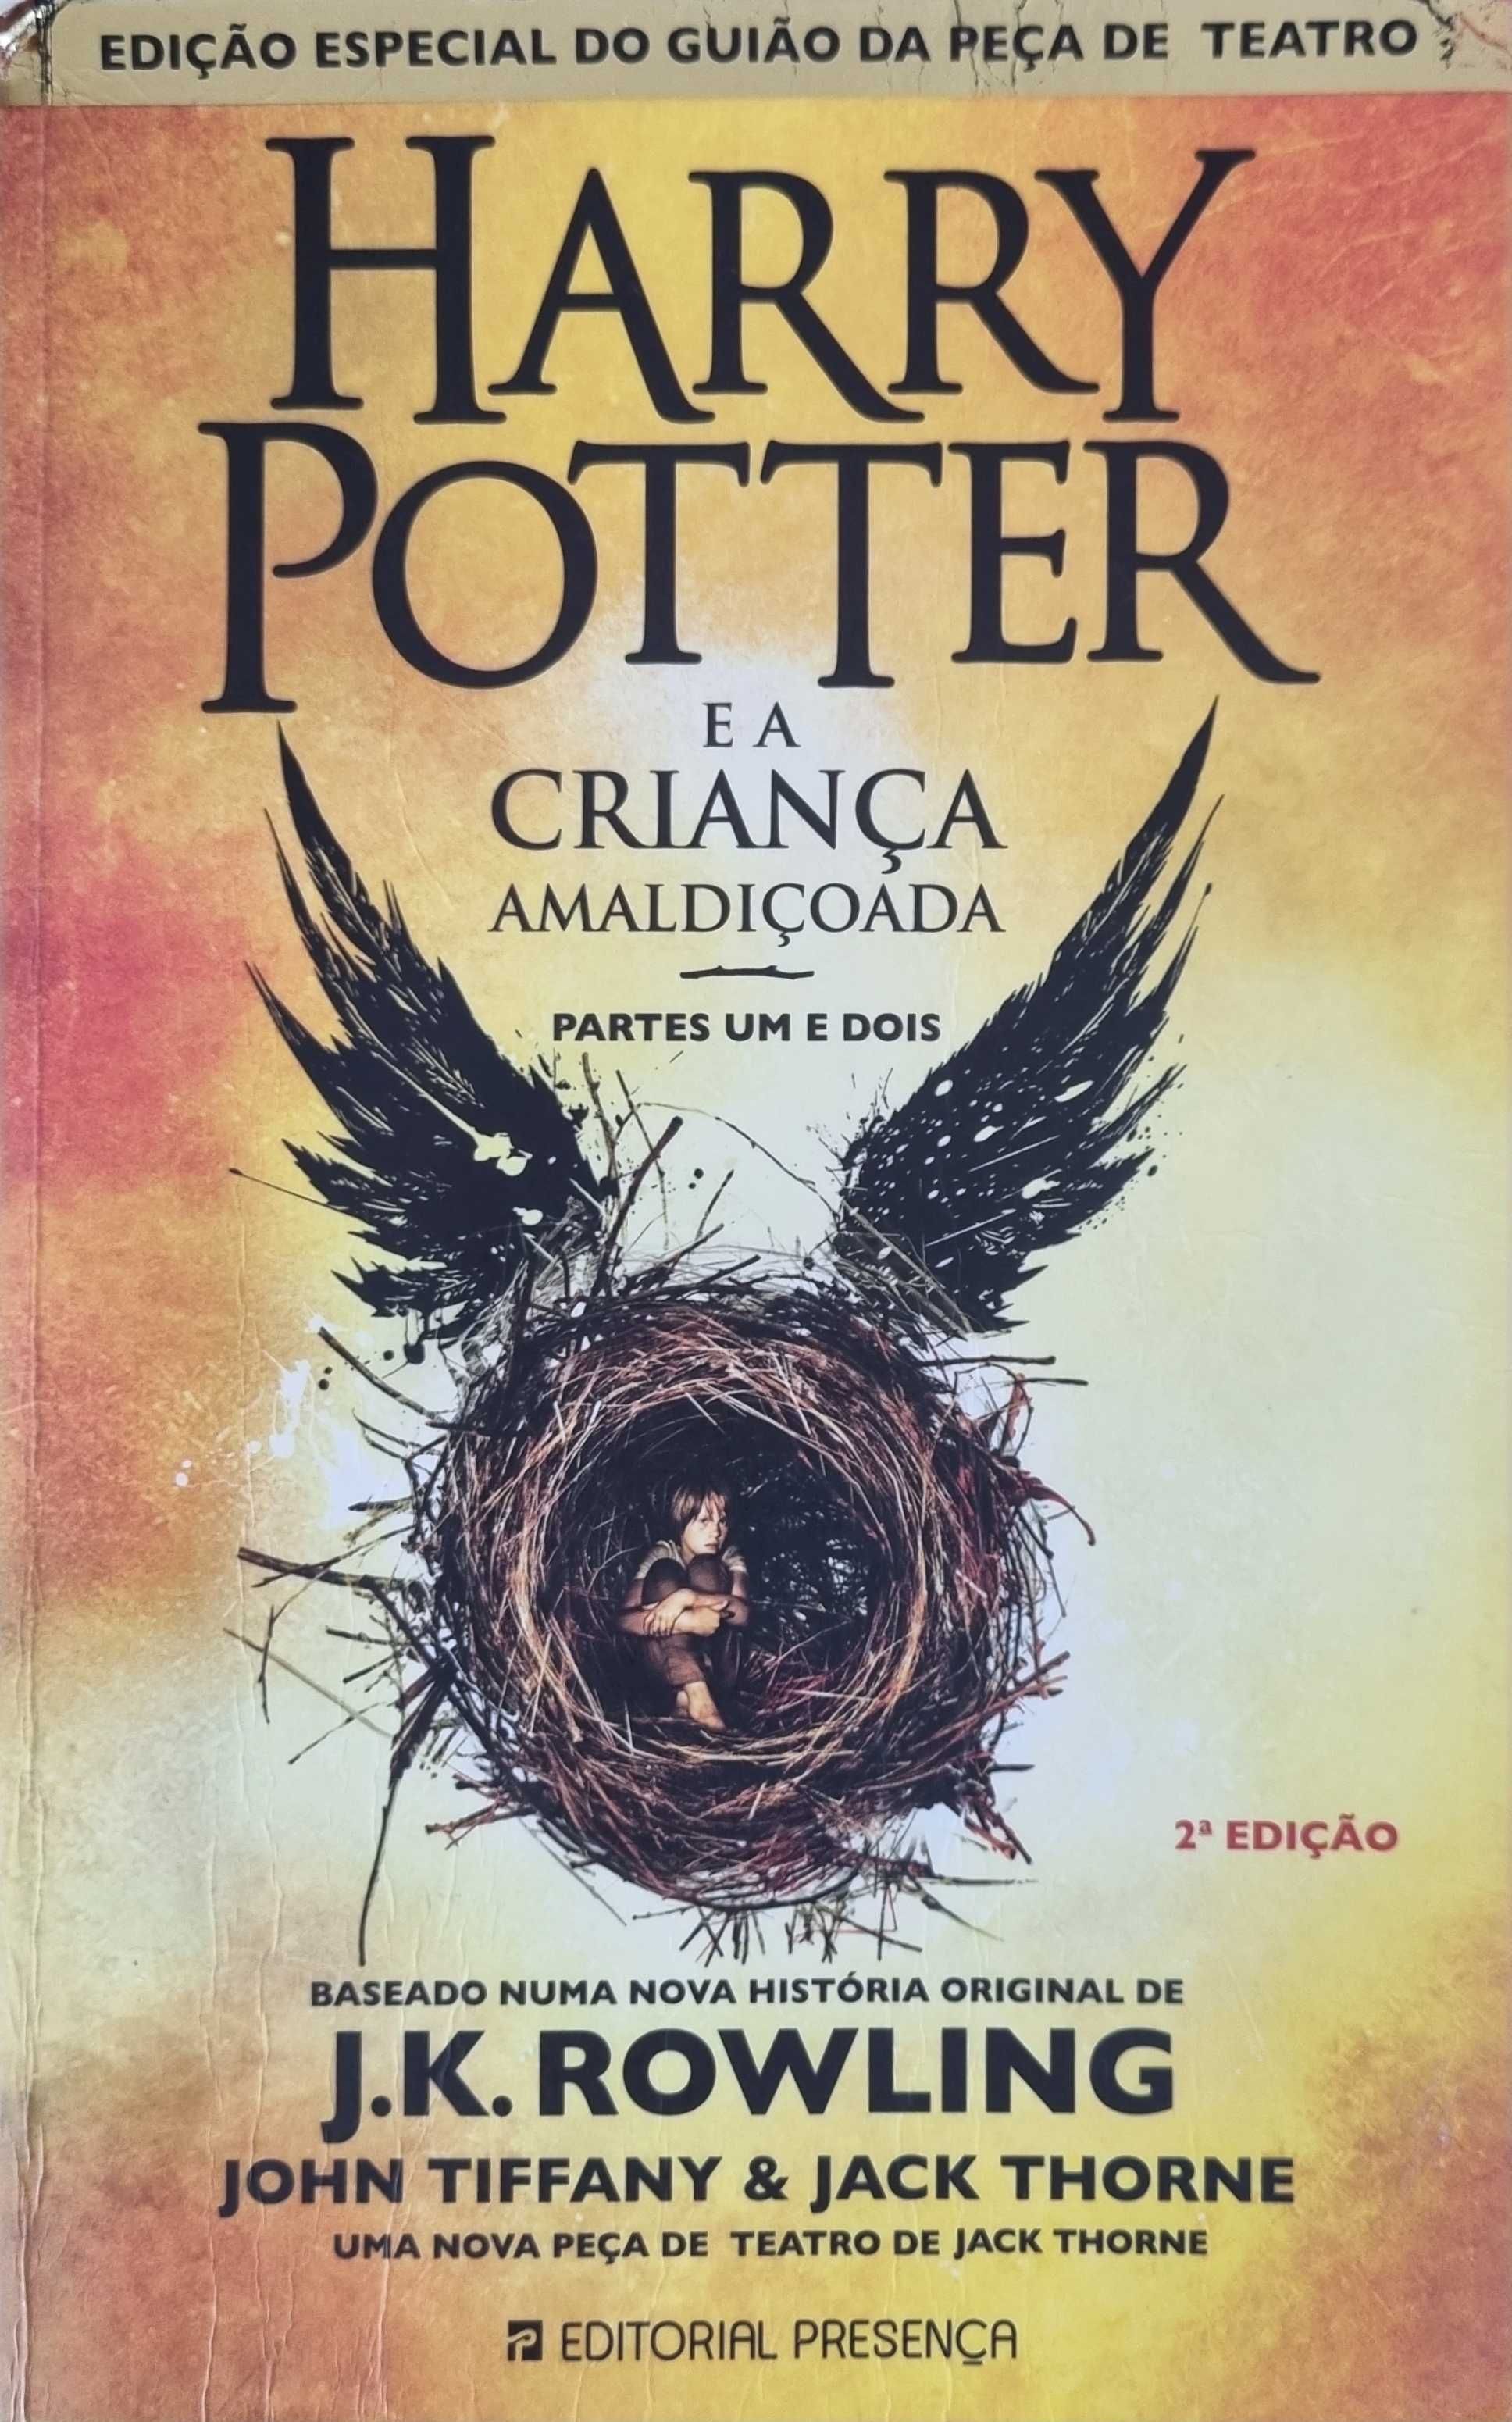 Livro "Harry Potter e a Criança Amaldiçoada"